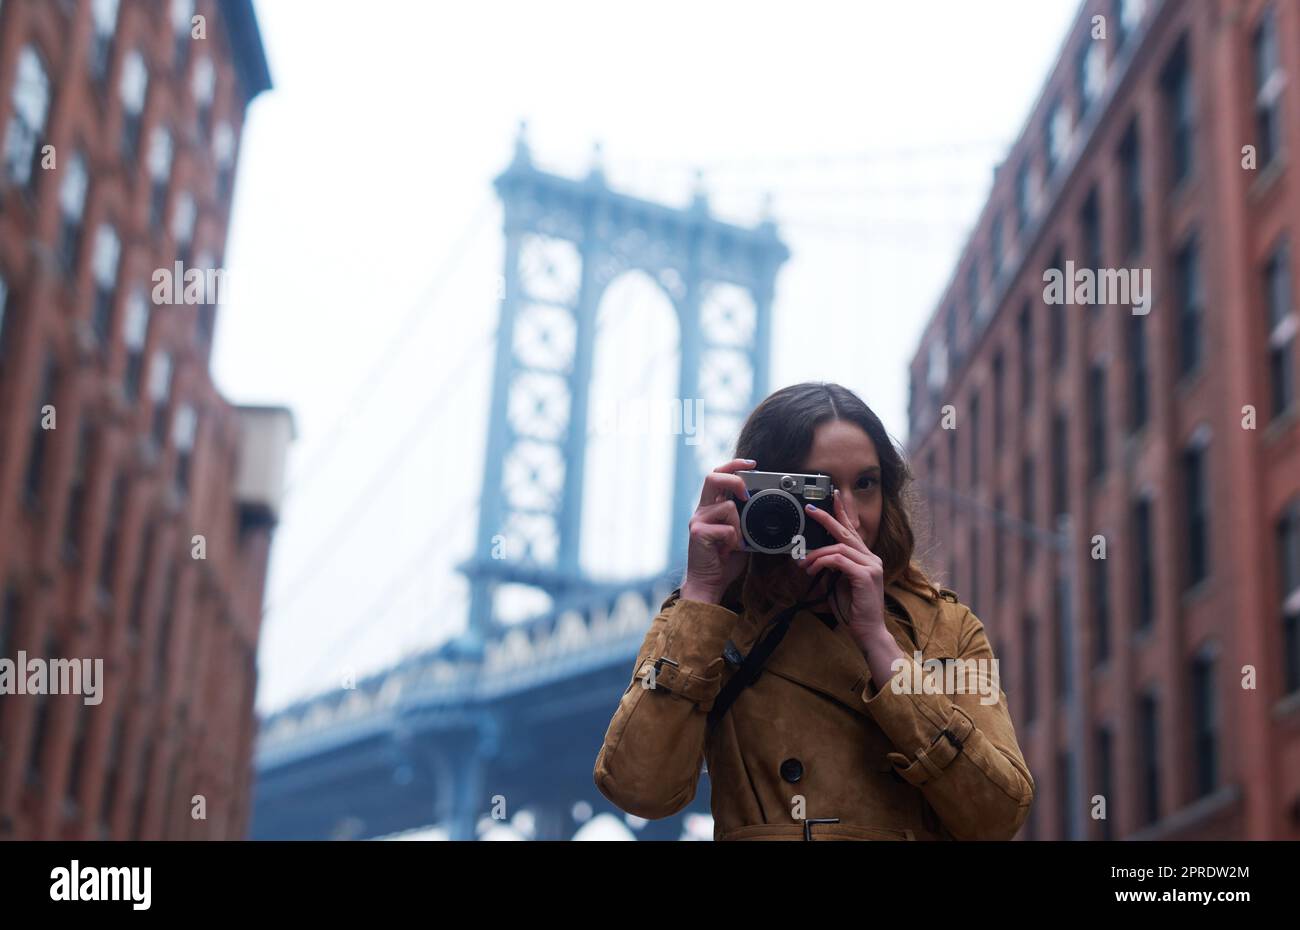 Verpassen Sie keinen einzigen Speicher mehr. Porträt einer attraktiven jungen Frau, die mit einer Kamera in der Stadt fotografiert. Stockfoto